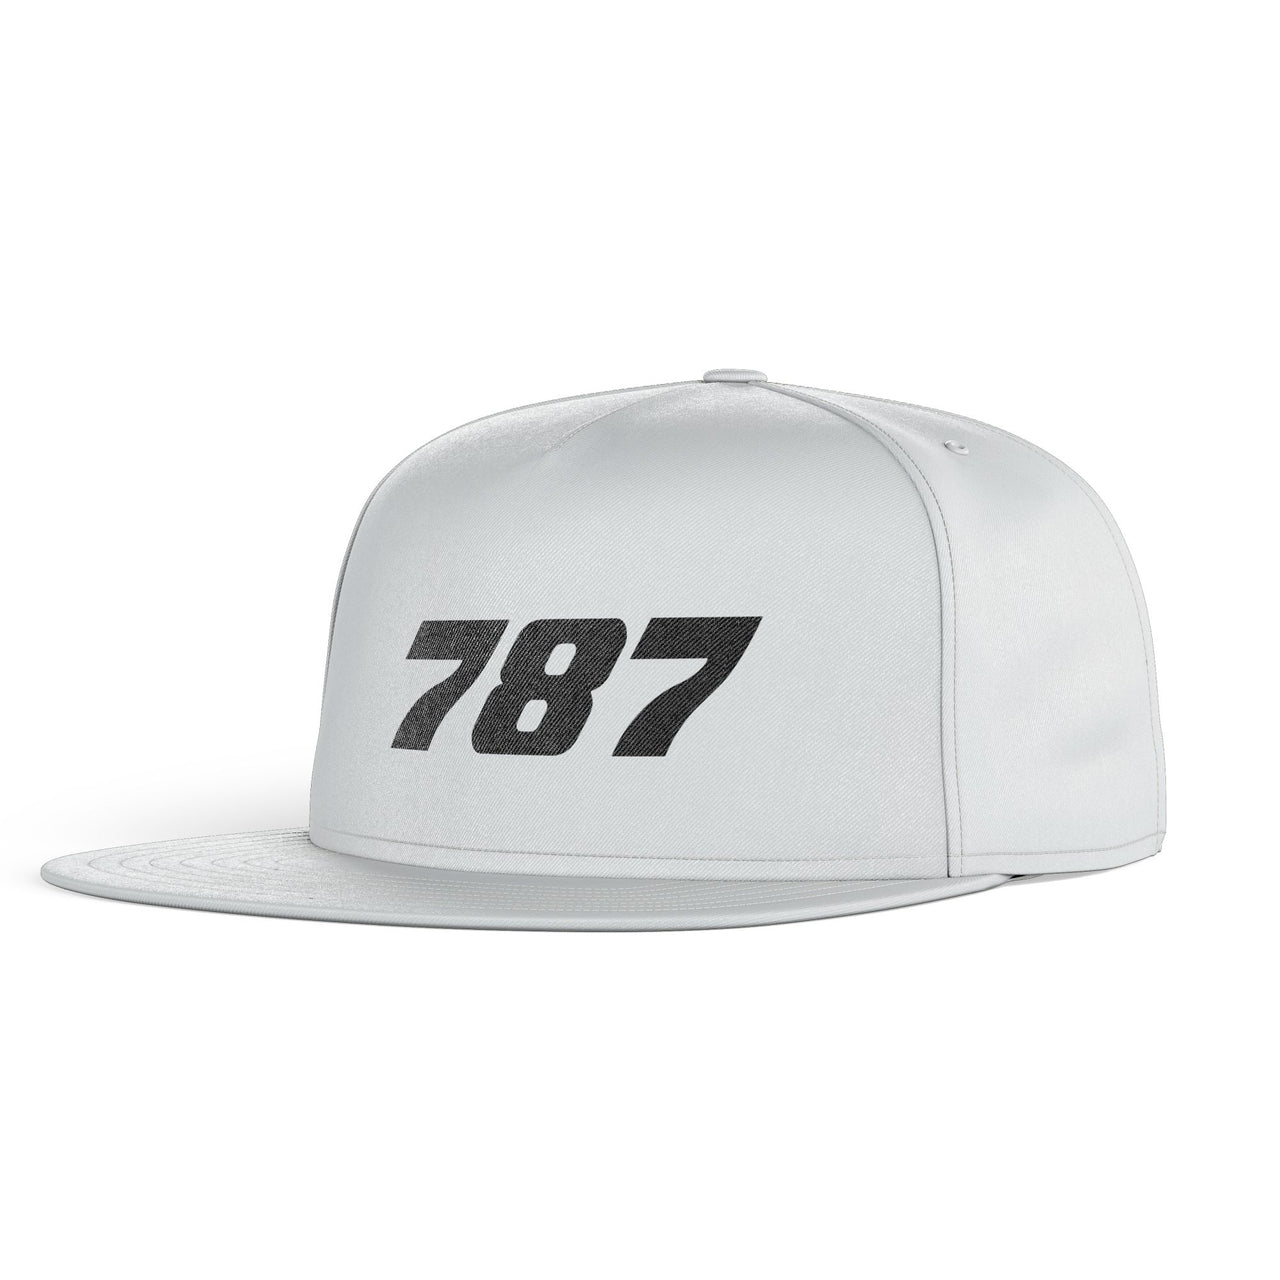 787 Flat Text Designed Snapback Caps & Hats